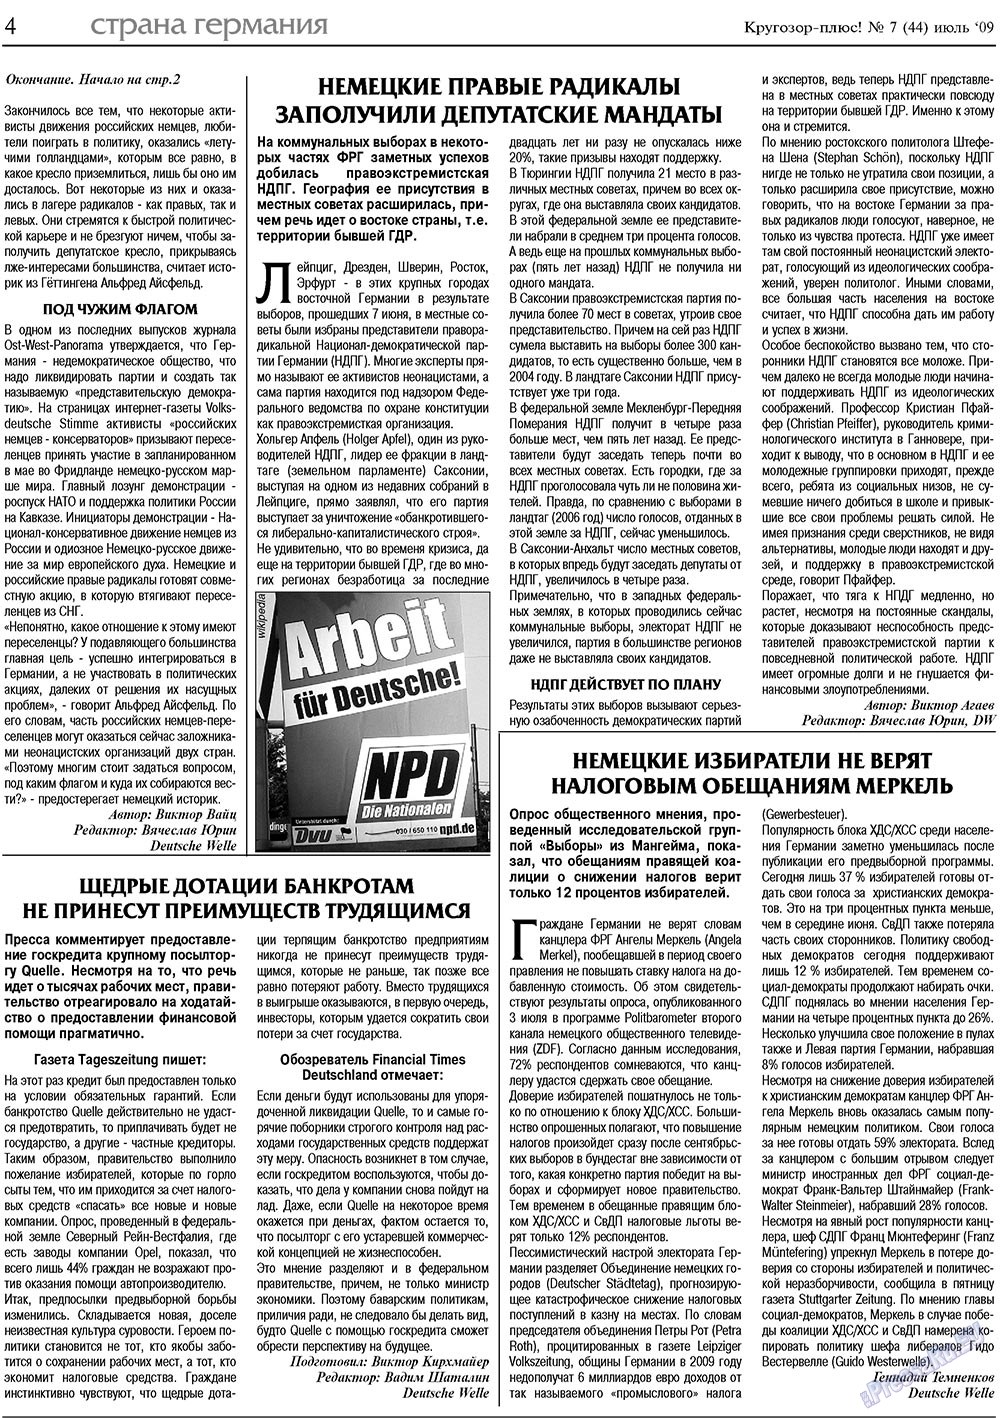 Кругозор плюс!, газета. 2009 №7 стр.4